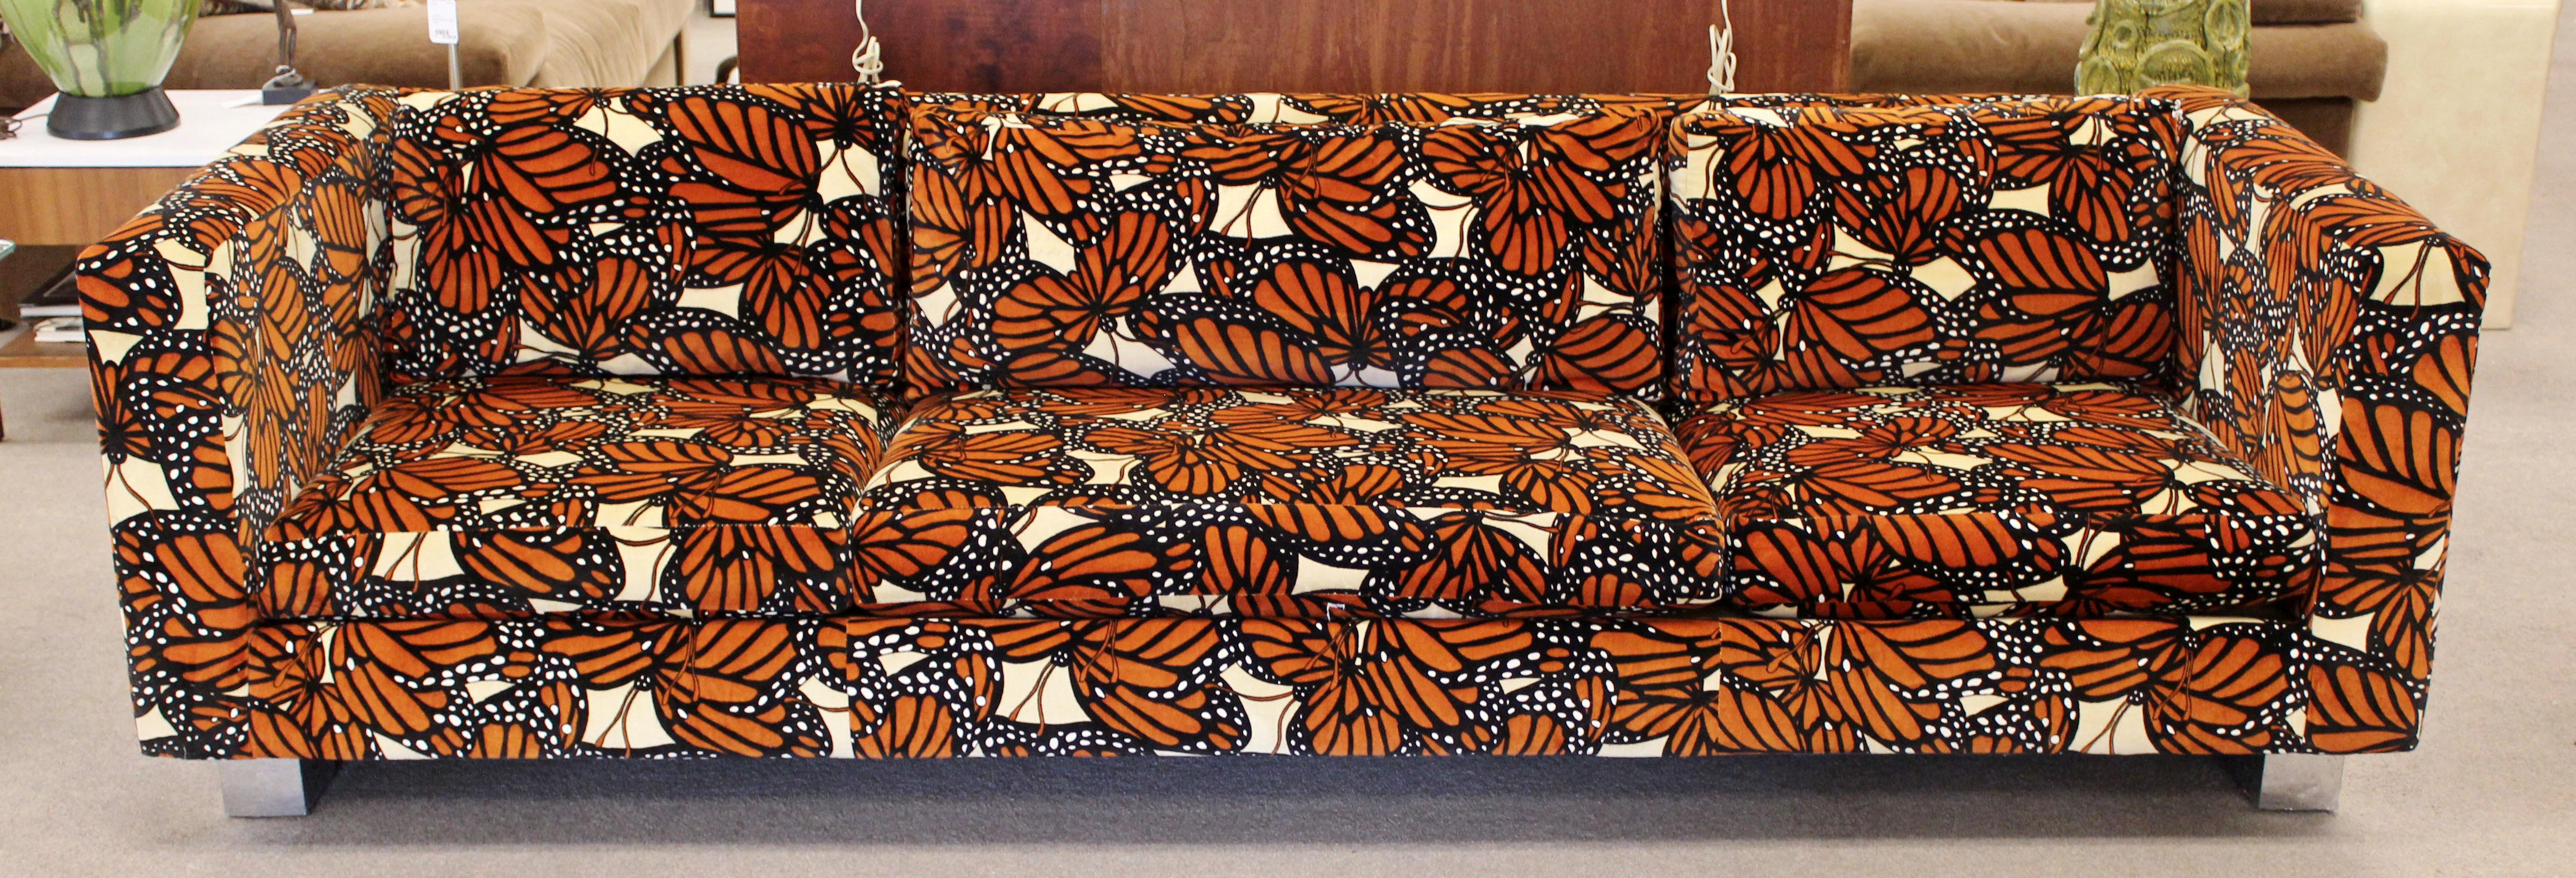 milo baughman monarch couch